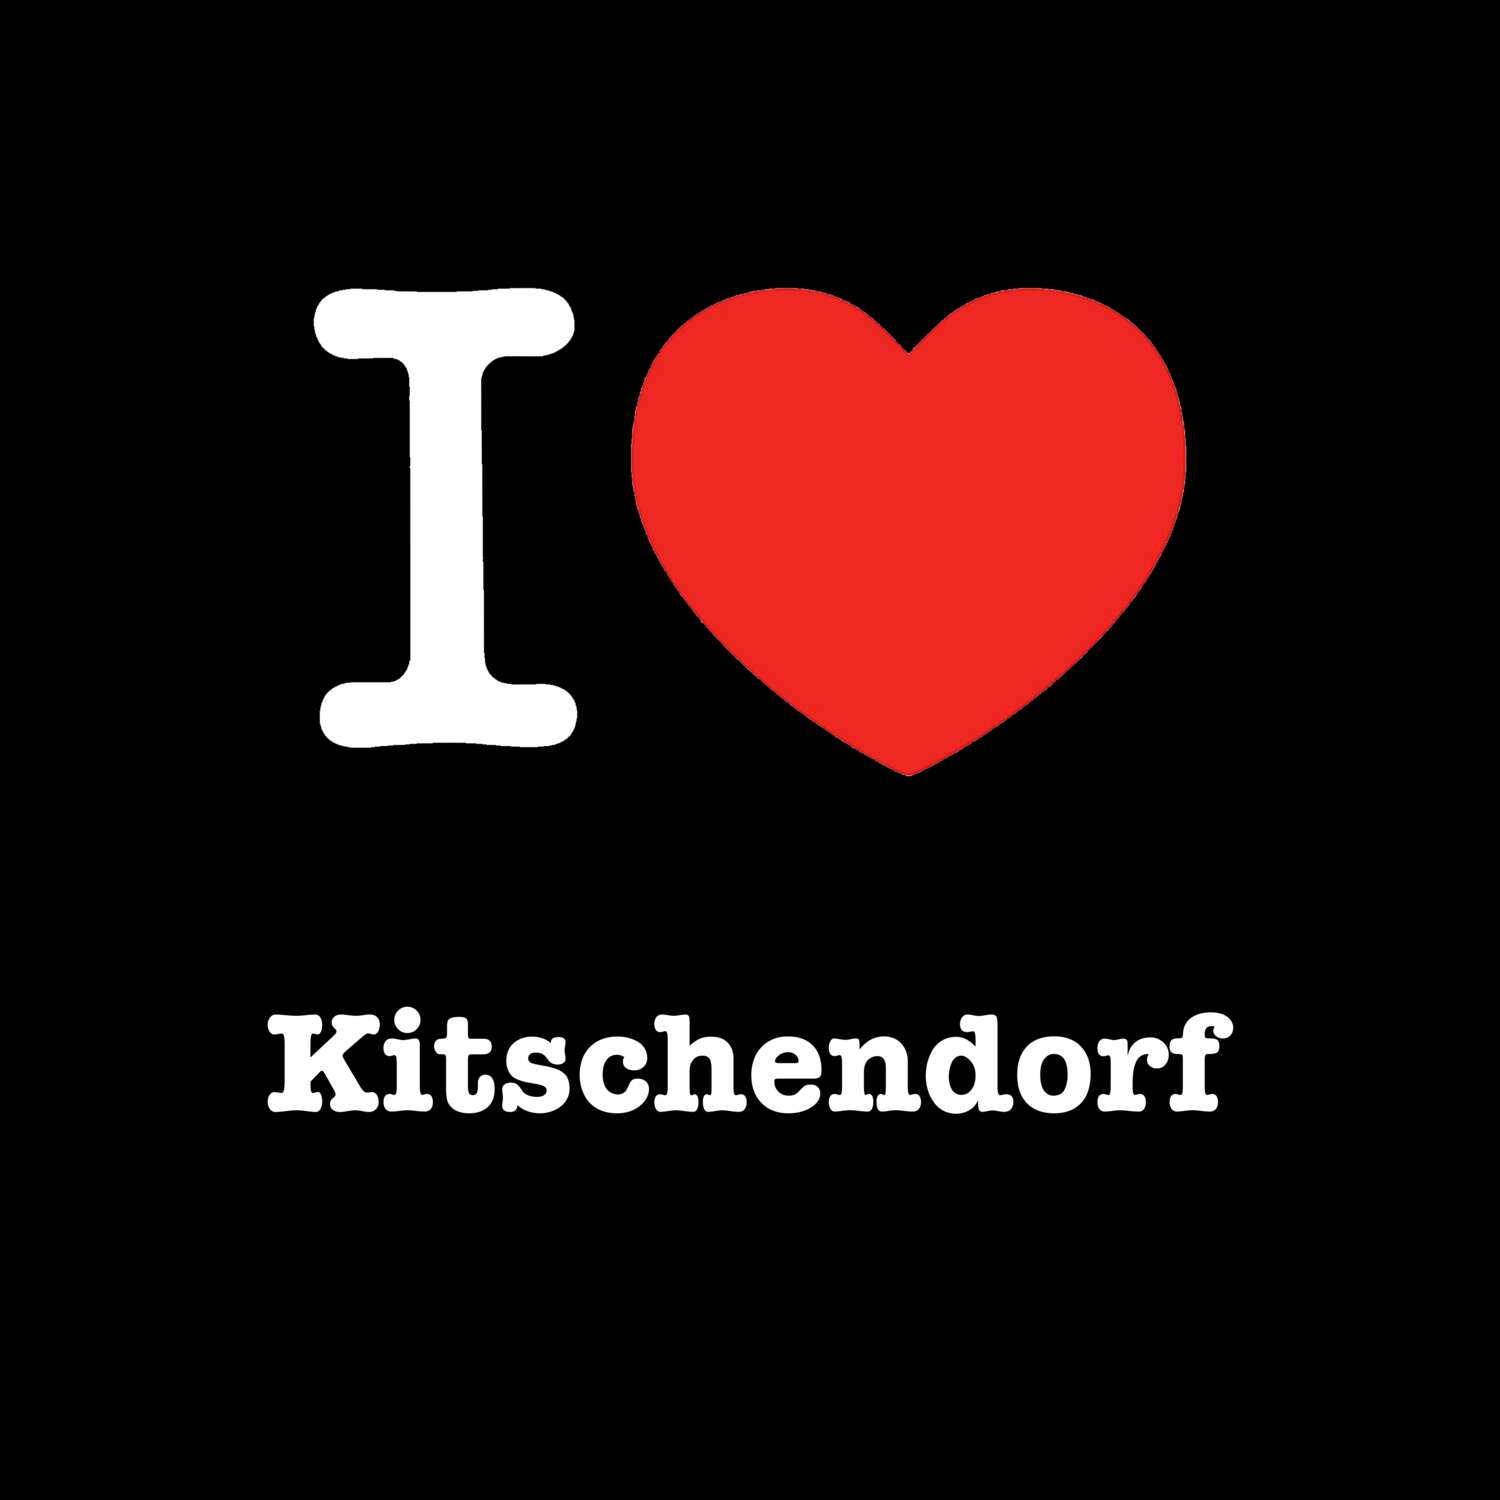 Kitschendorf T-Shirt »I love«